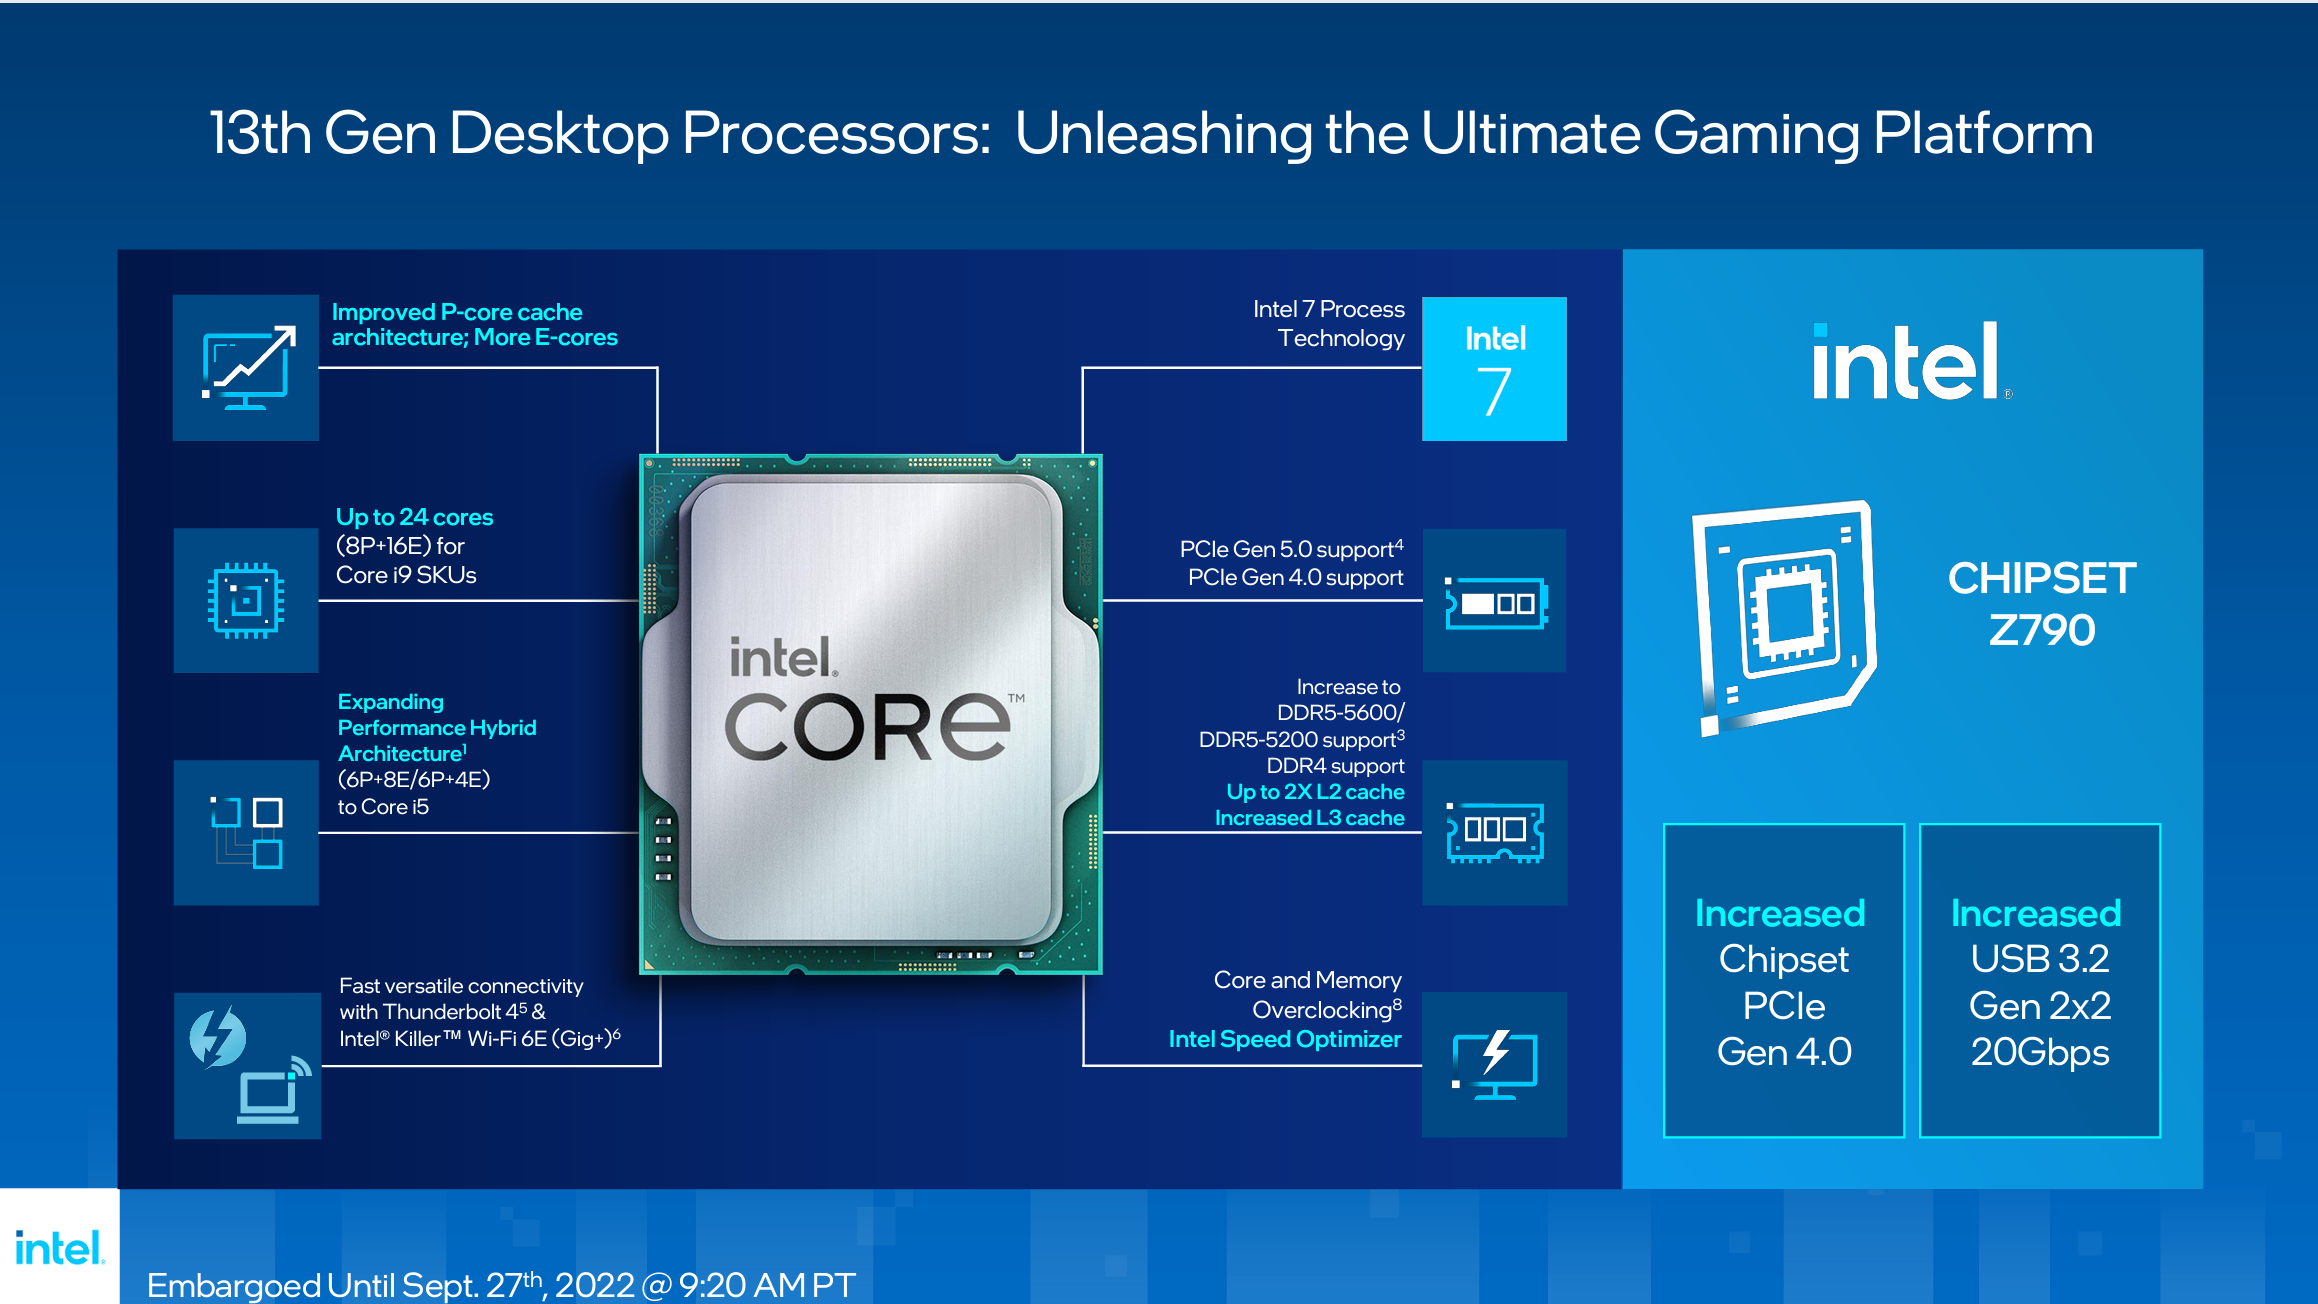 Conjunto de chips Intel Raptor Lake y Z790 con especificaciones enumeradas